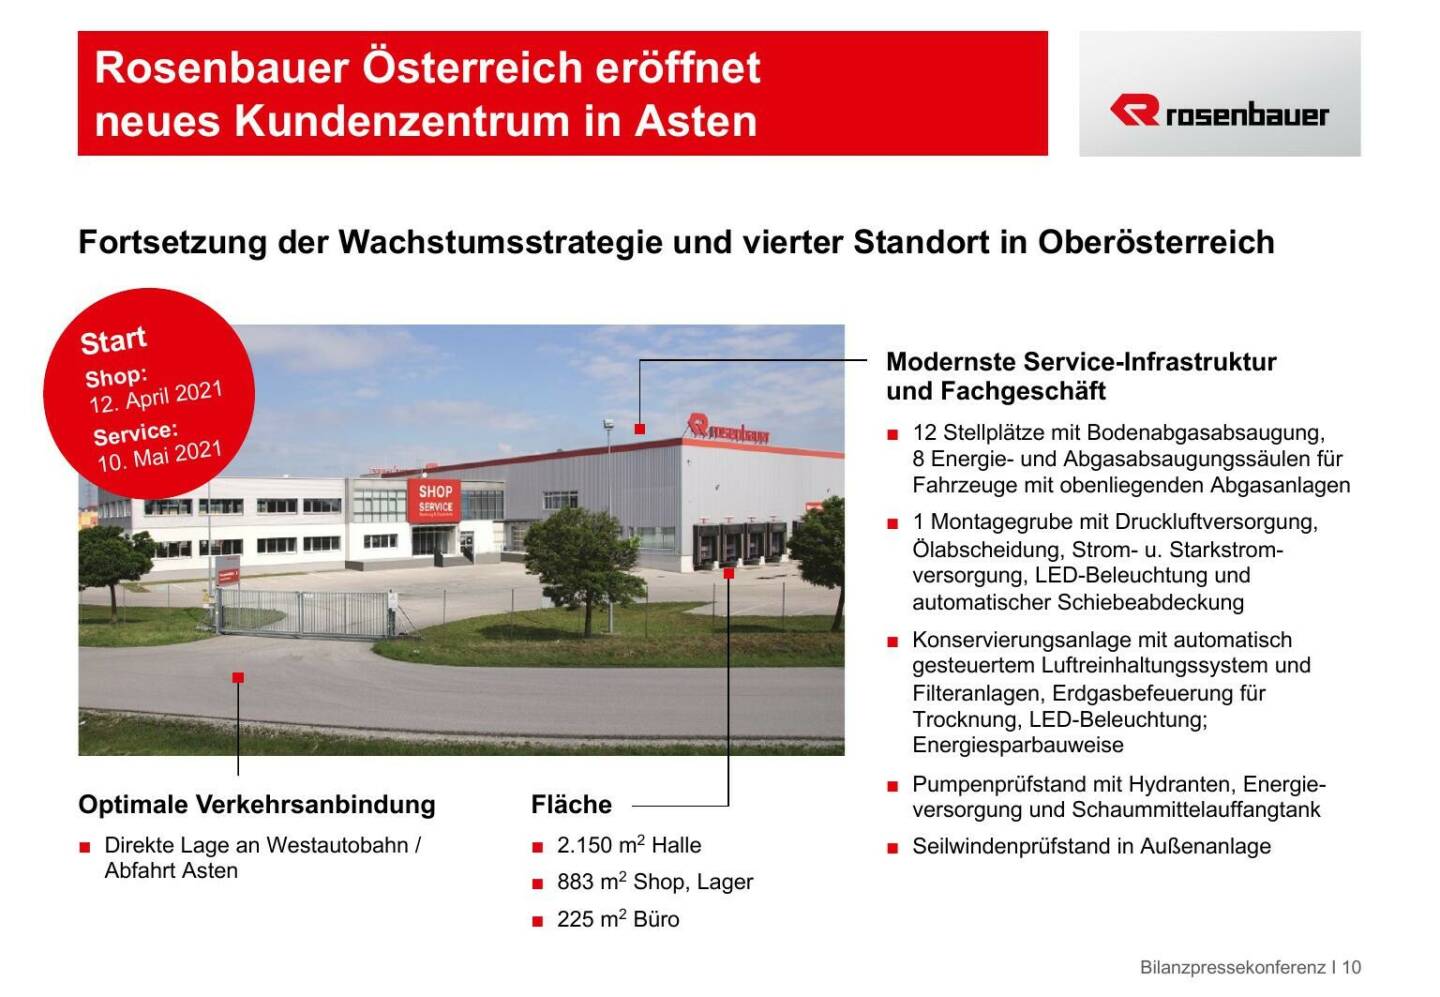 Rosenbauer - Rosenbauer Österreich eröffnet neues Kundenzentrum in Asten 